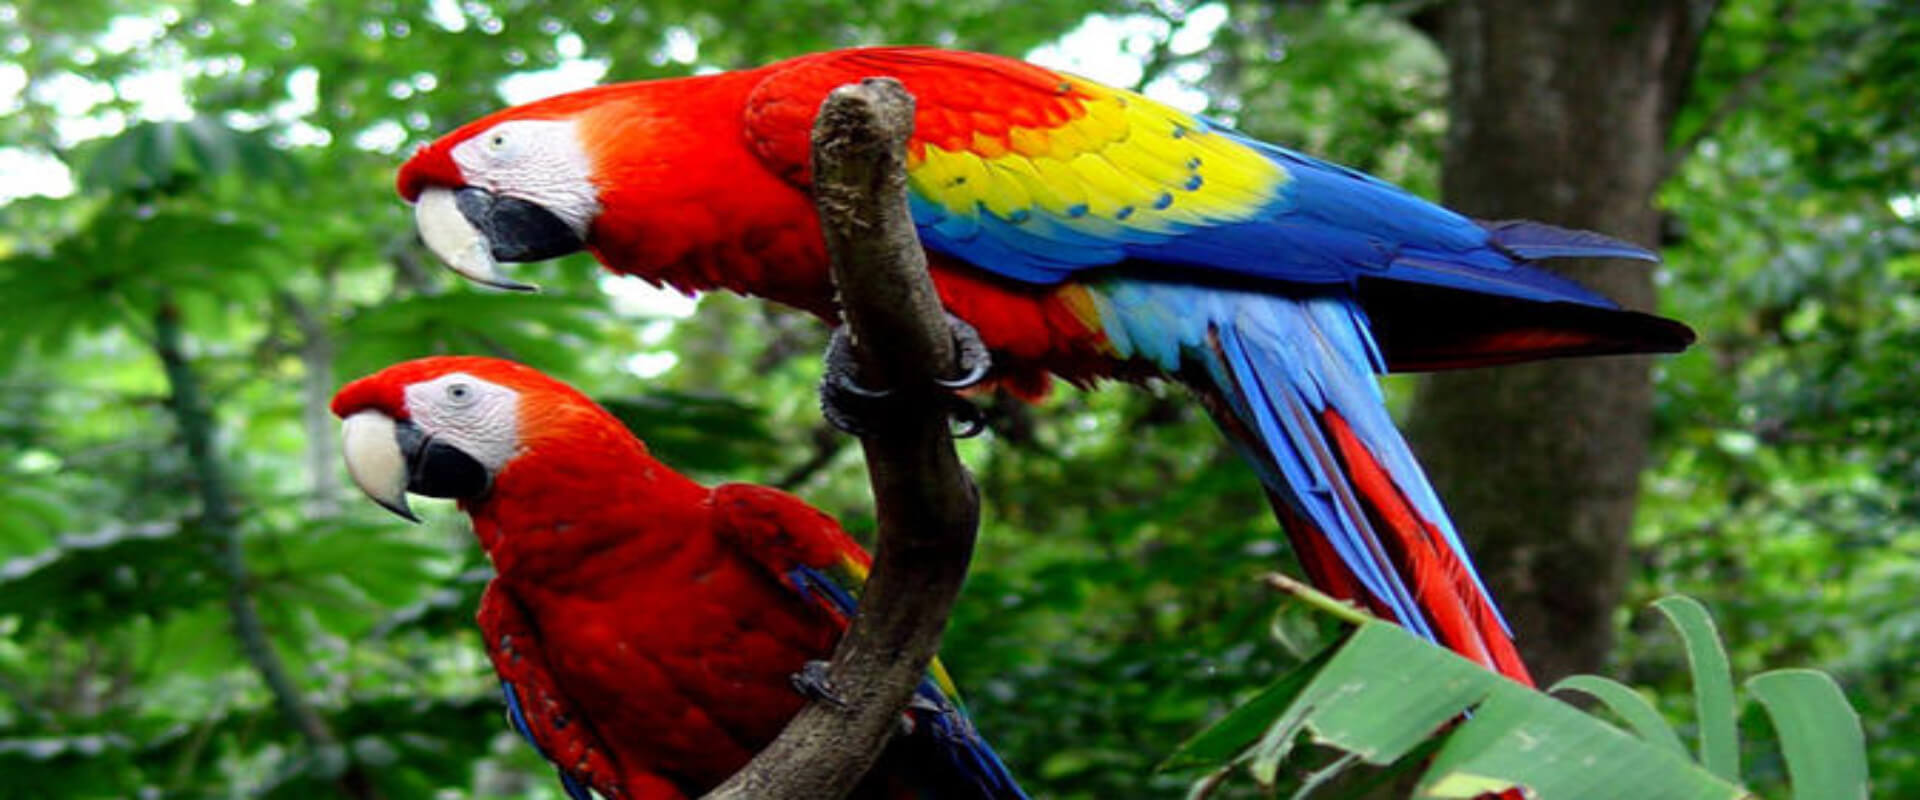 Carara National Park Tour | Costa Rica Jade Tours